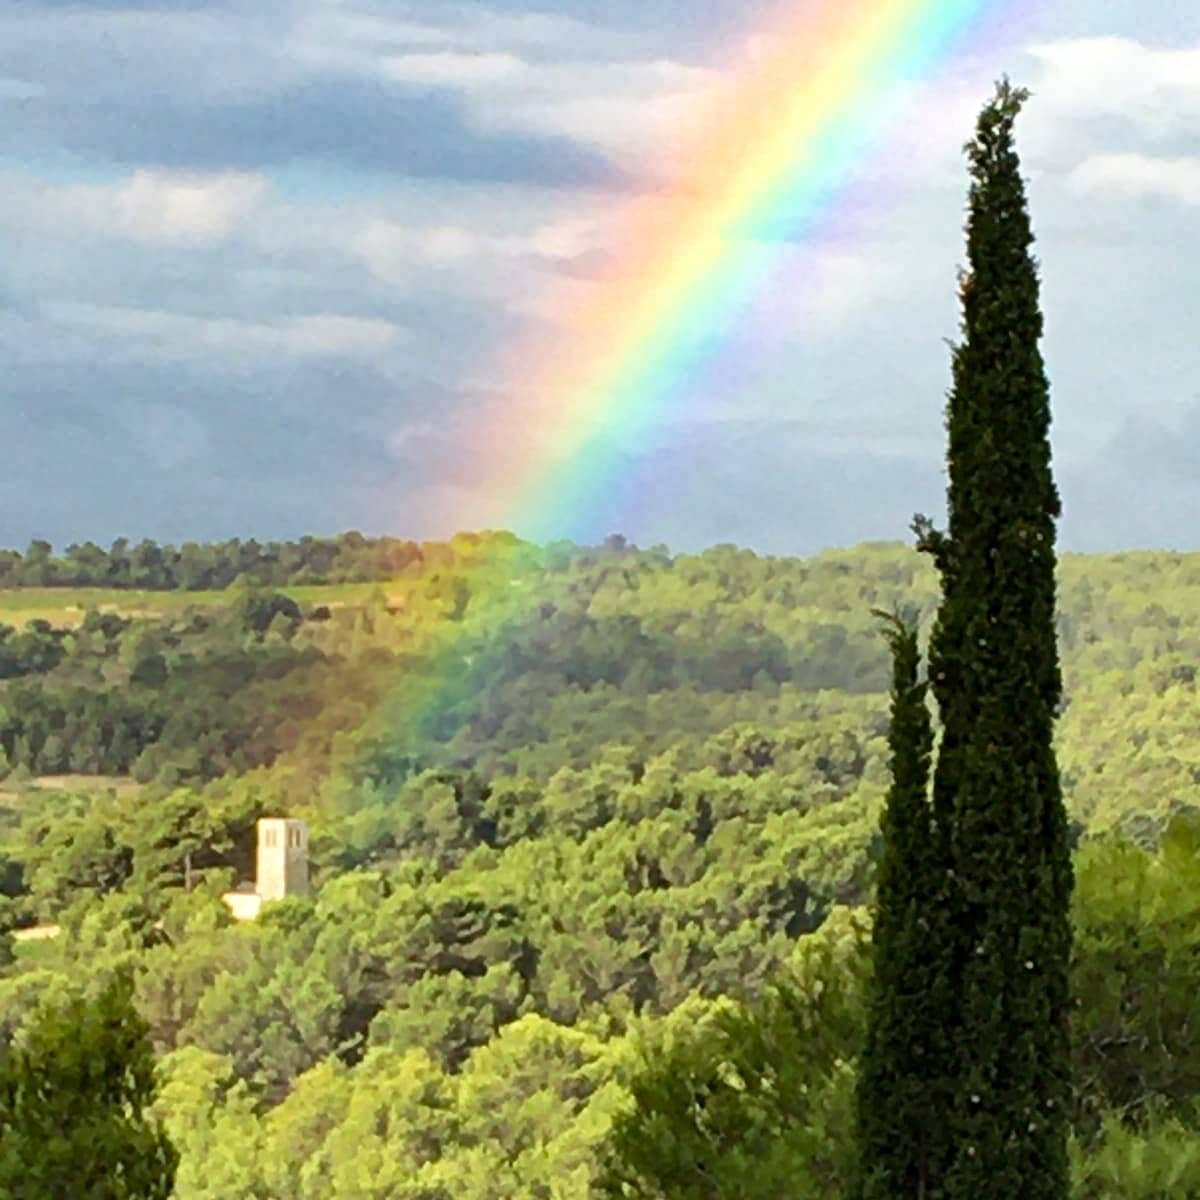 Organic, vegan and rainbow infused

La Chapelle se nourrit d'arc en ciel

#chateaustjacquesdalbas #chateaustjacques #minervois #wine #vin #carcassonne #rainbow credit: Poudou